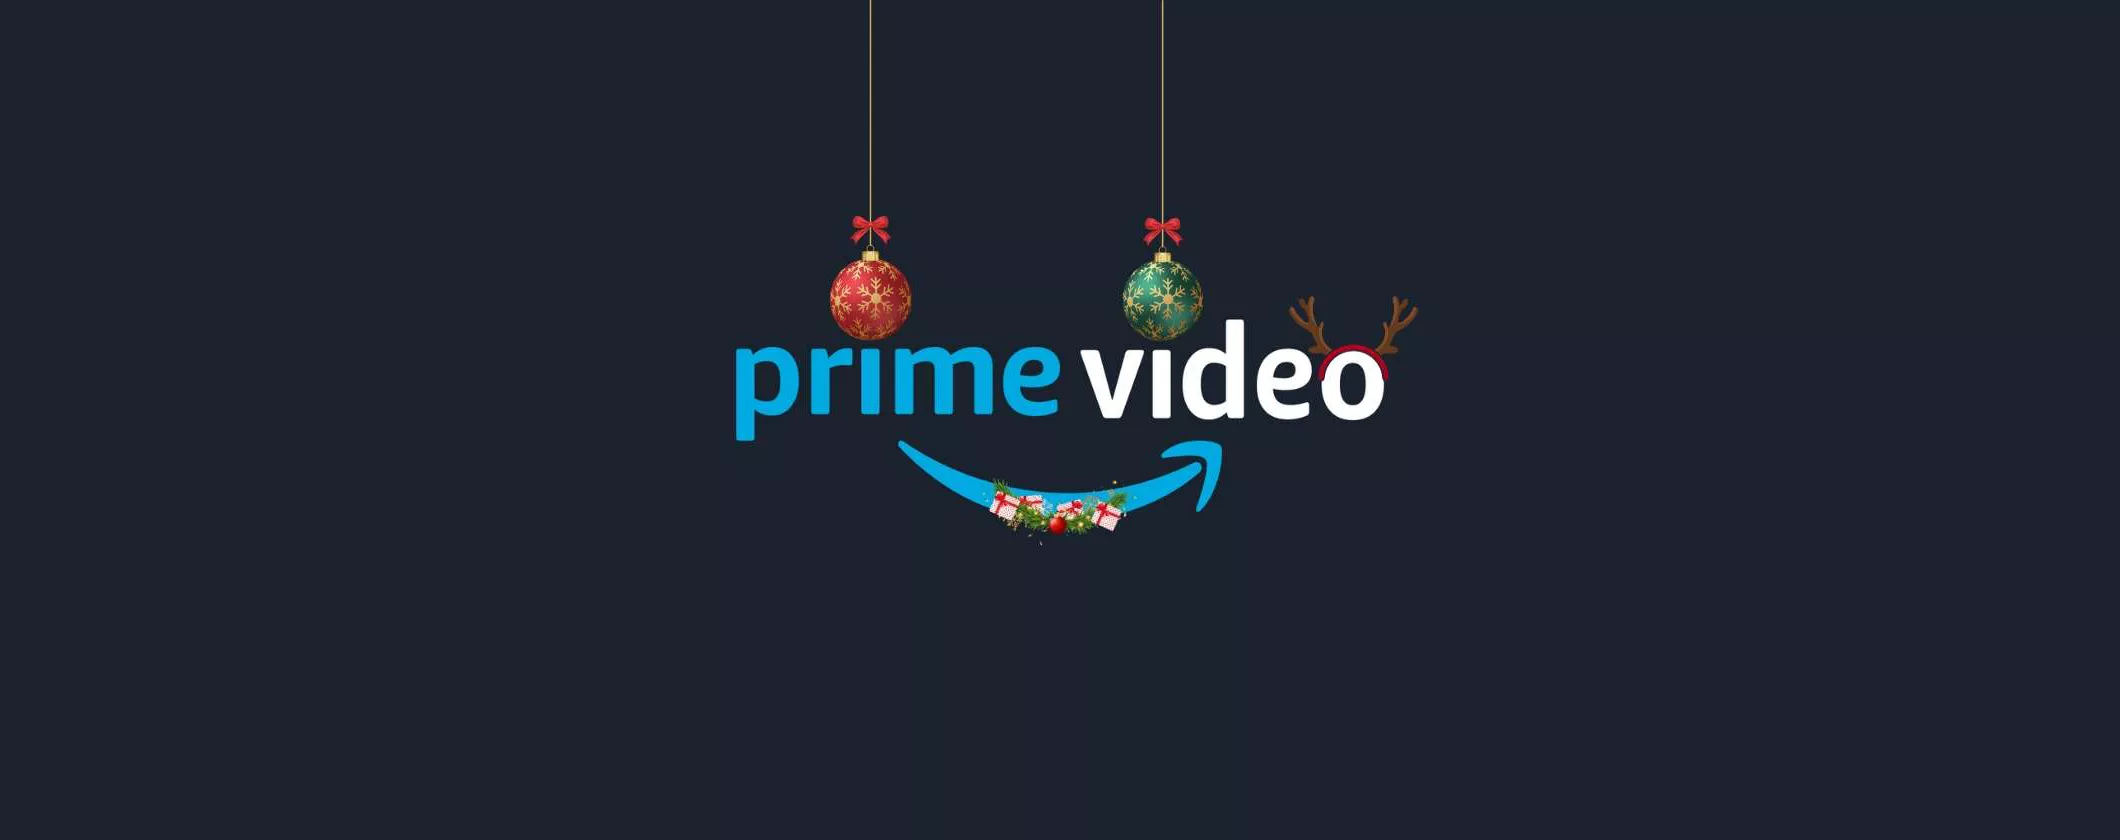 Prime Video: aspettati un mese di dicembre spettacolare